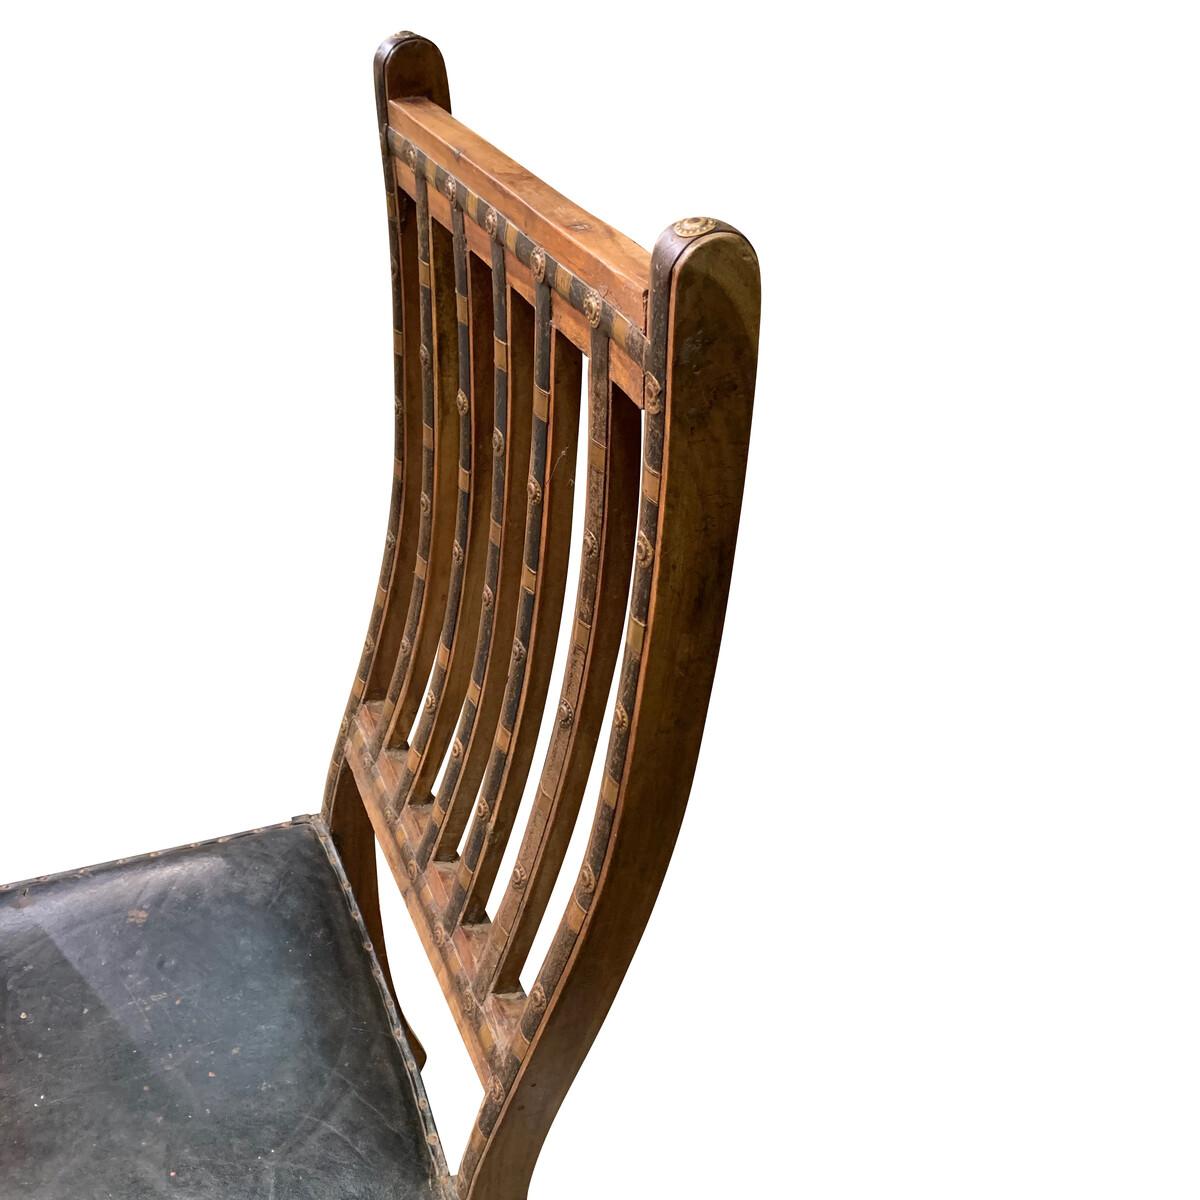 indischer Einzelstuhl aus dem 19. Jahrhundert mit dekorativen Eisenbändern und Bronzebeschlägen
entlang des Rücksitzes und der Beine.
Die spindelförmige Rückenlehne ist geschwungen.
Der schwarze Ledersitz ist original.

      